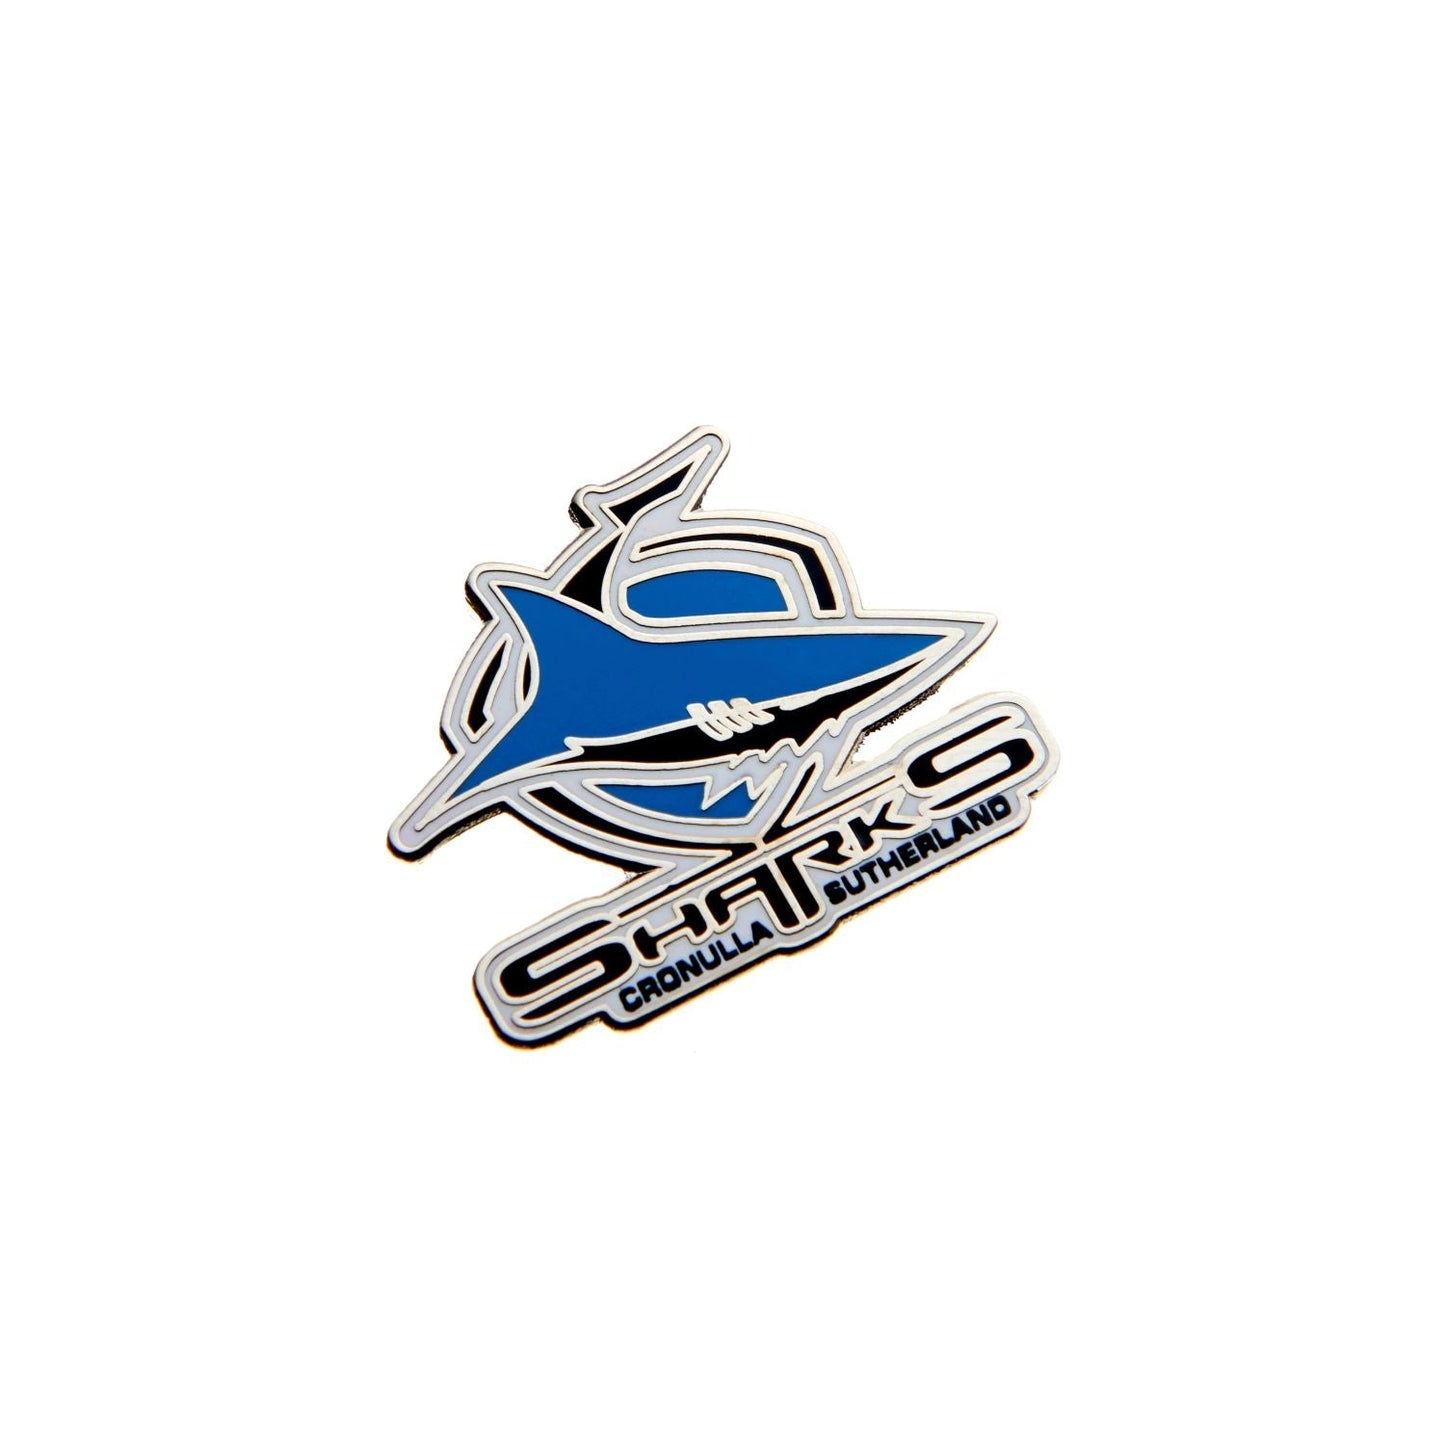 Cronulla-Sutherland Sharks Logo Pin